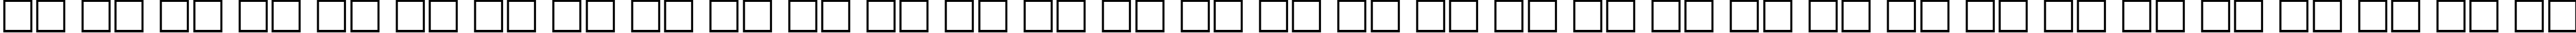 Пример написания русского алфавита шрифтом Plain